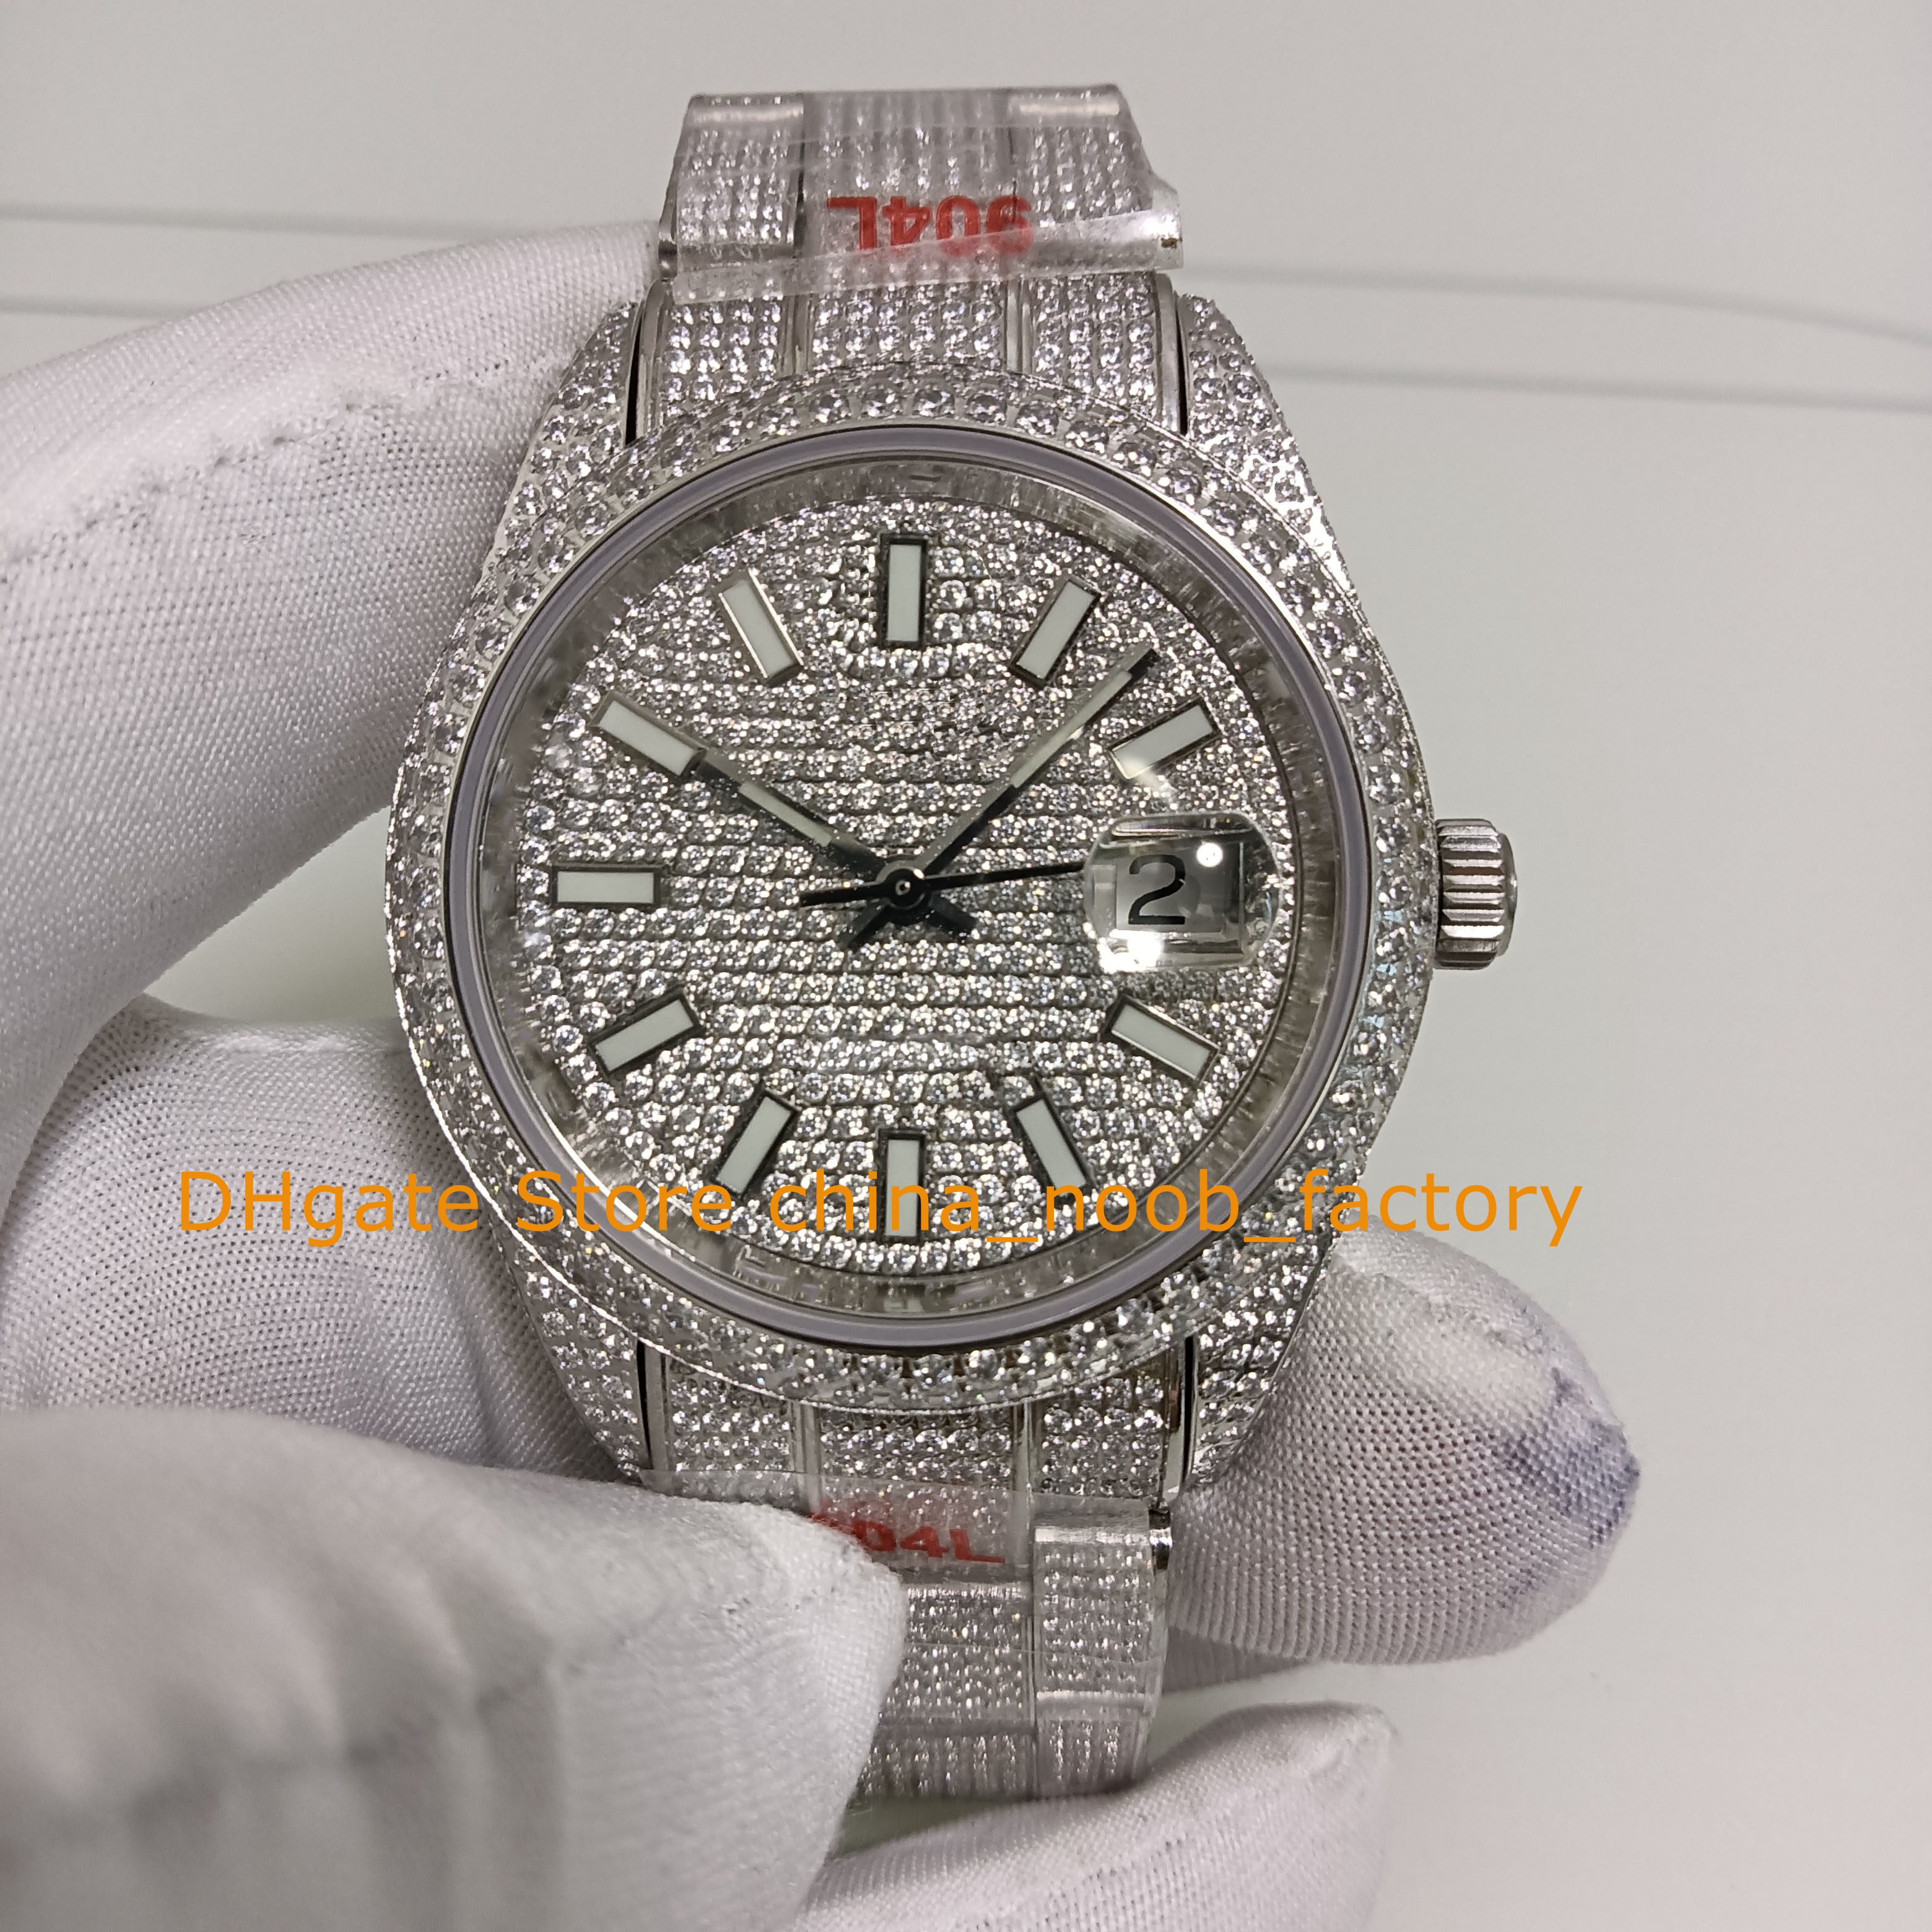 2スタイルメンズオートマチックウォッチメンズ41mmフルダイヤモンドダイヤモンドブレスレットサファイアガラスTW 2824ムーブメントメカニカルウォッチ腕時計